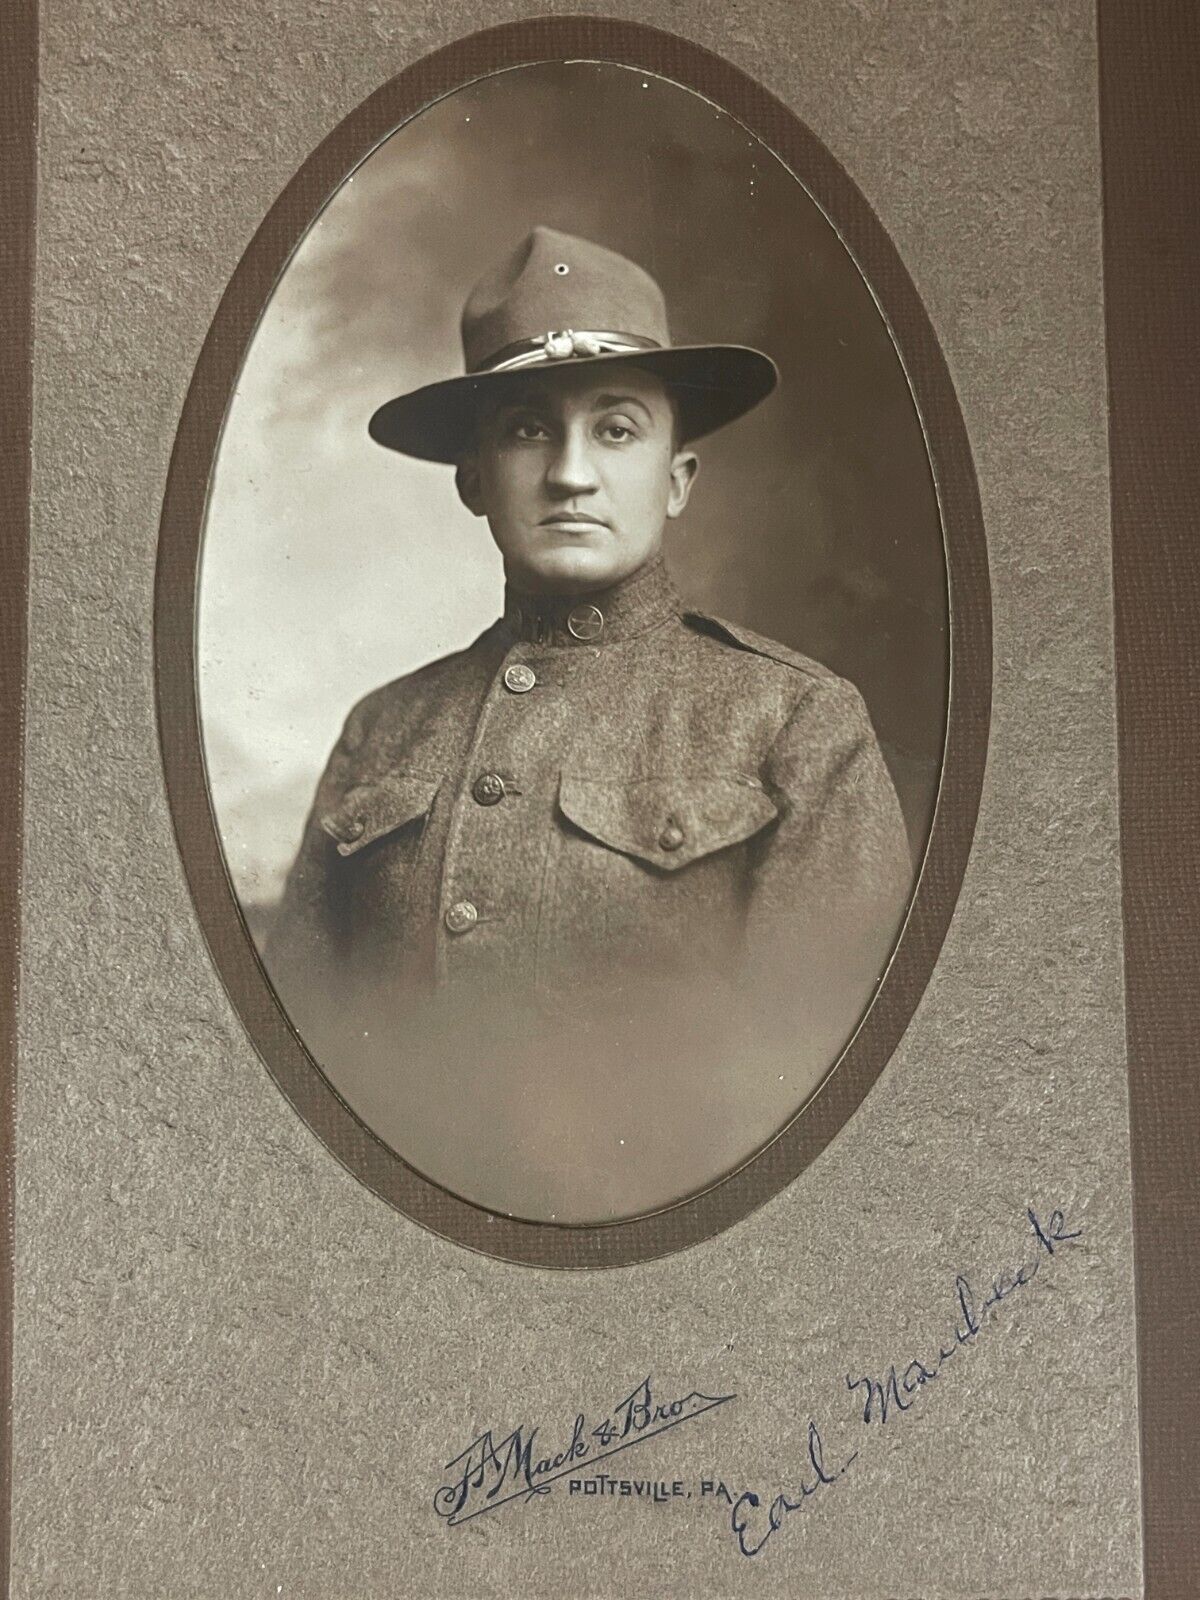 WWI Soldier Photo Identified Earl Maubeck Pottsville PA Photographer, FA?